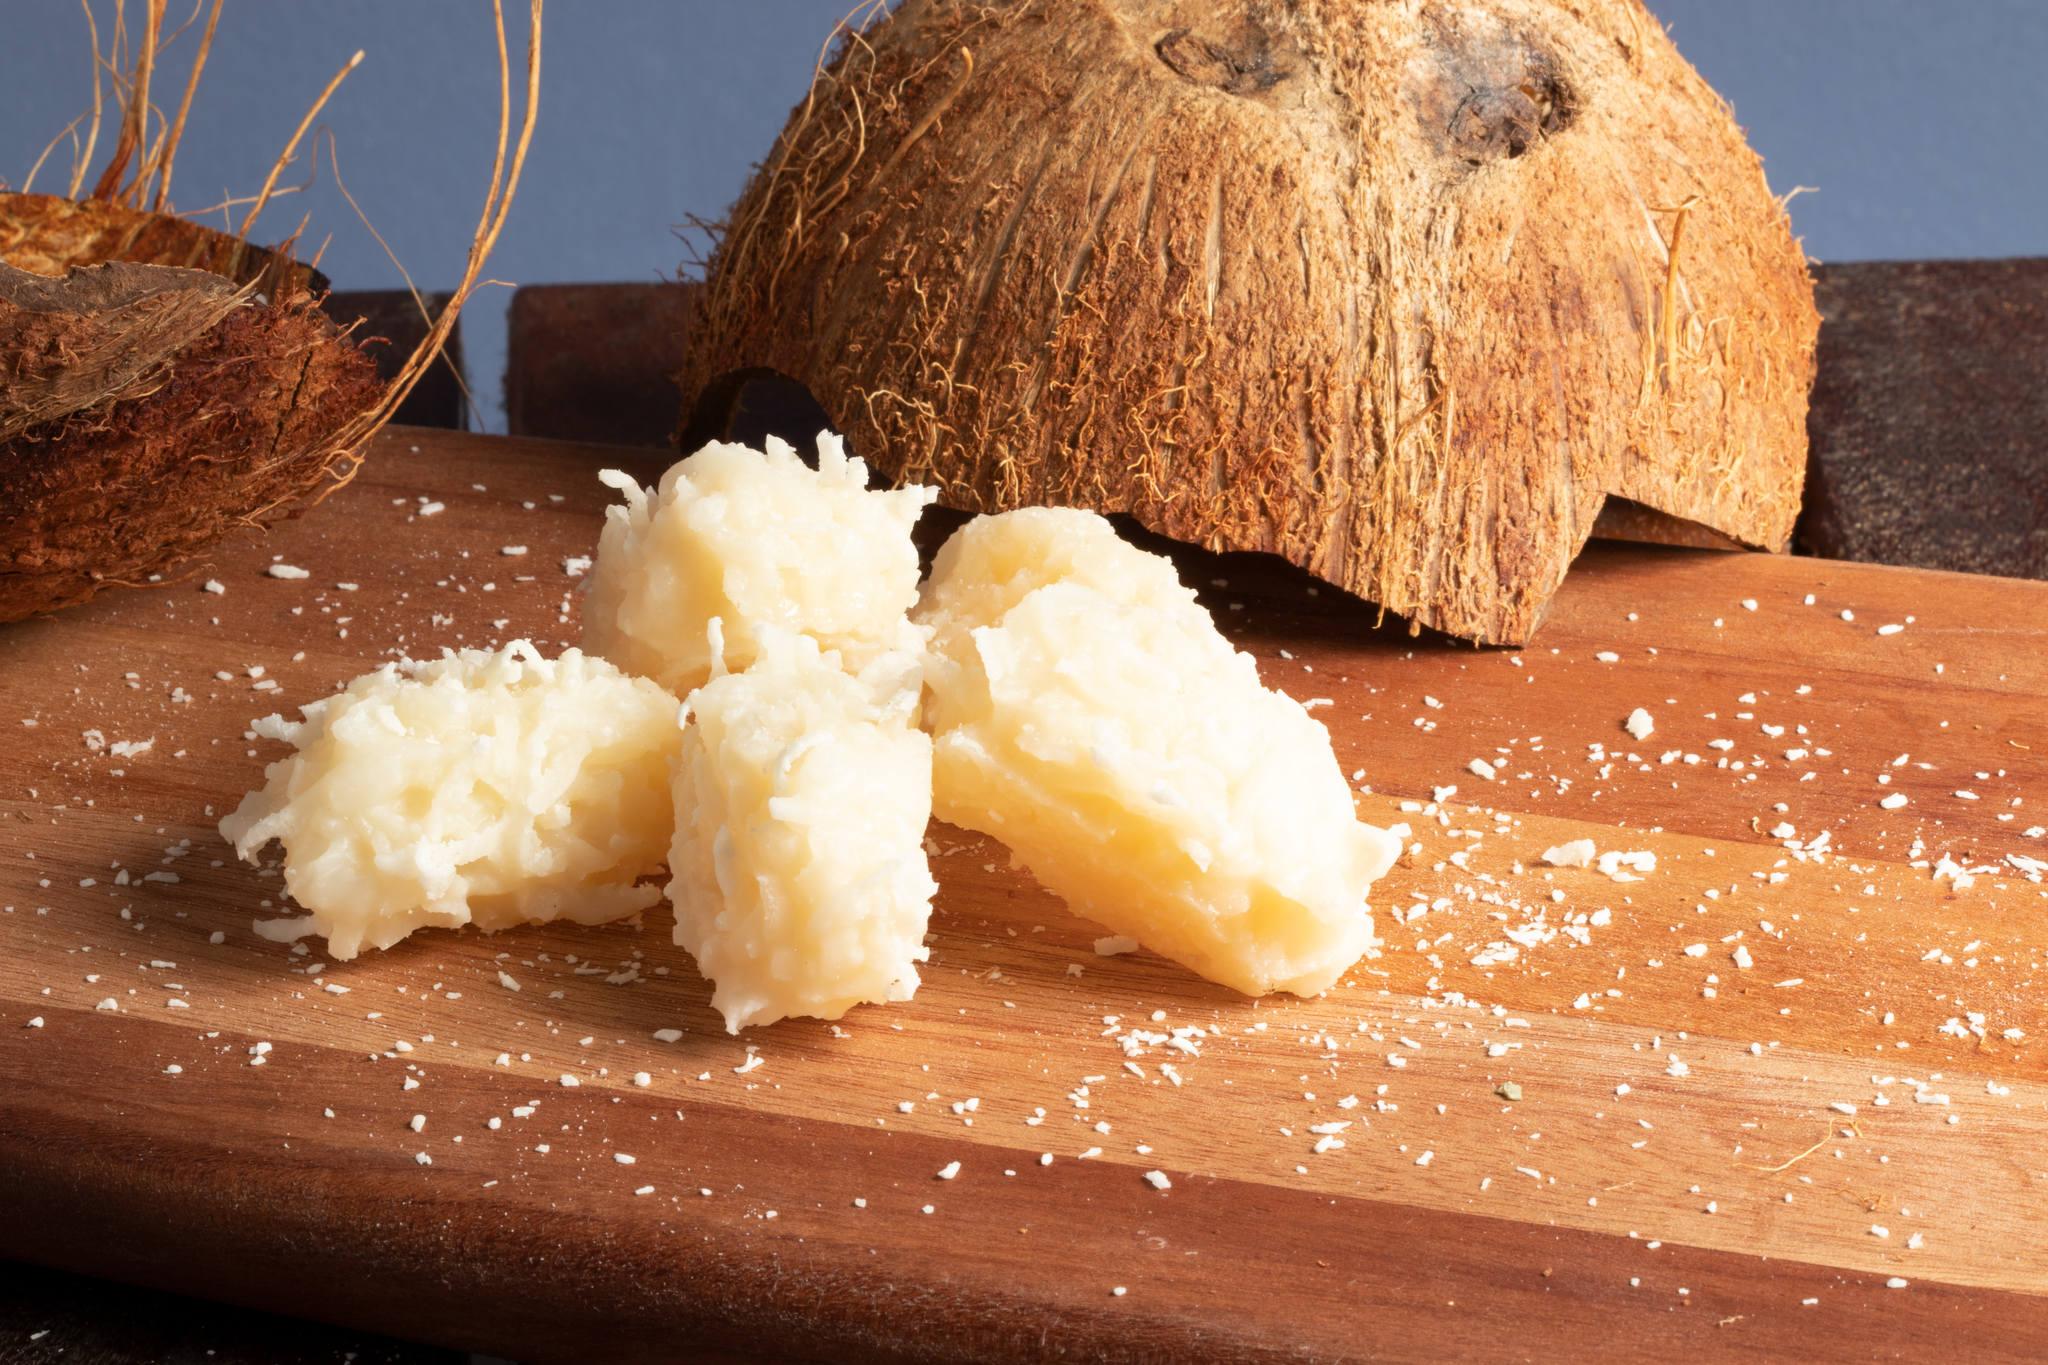 Cocada Elaborada com coco ralado, açúcar e água, é uma sobremesa tradicionalmente apreciada nas festas juninas.